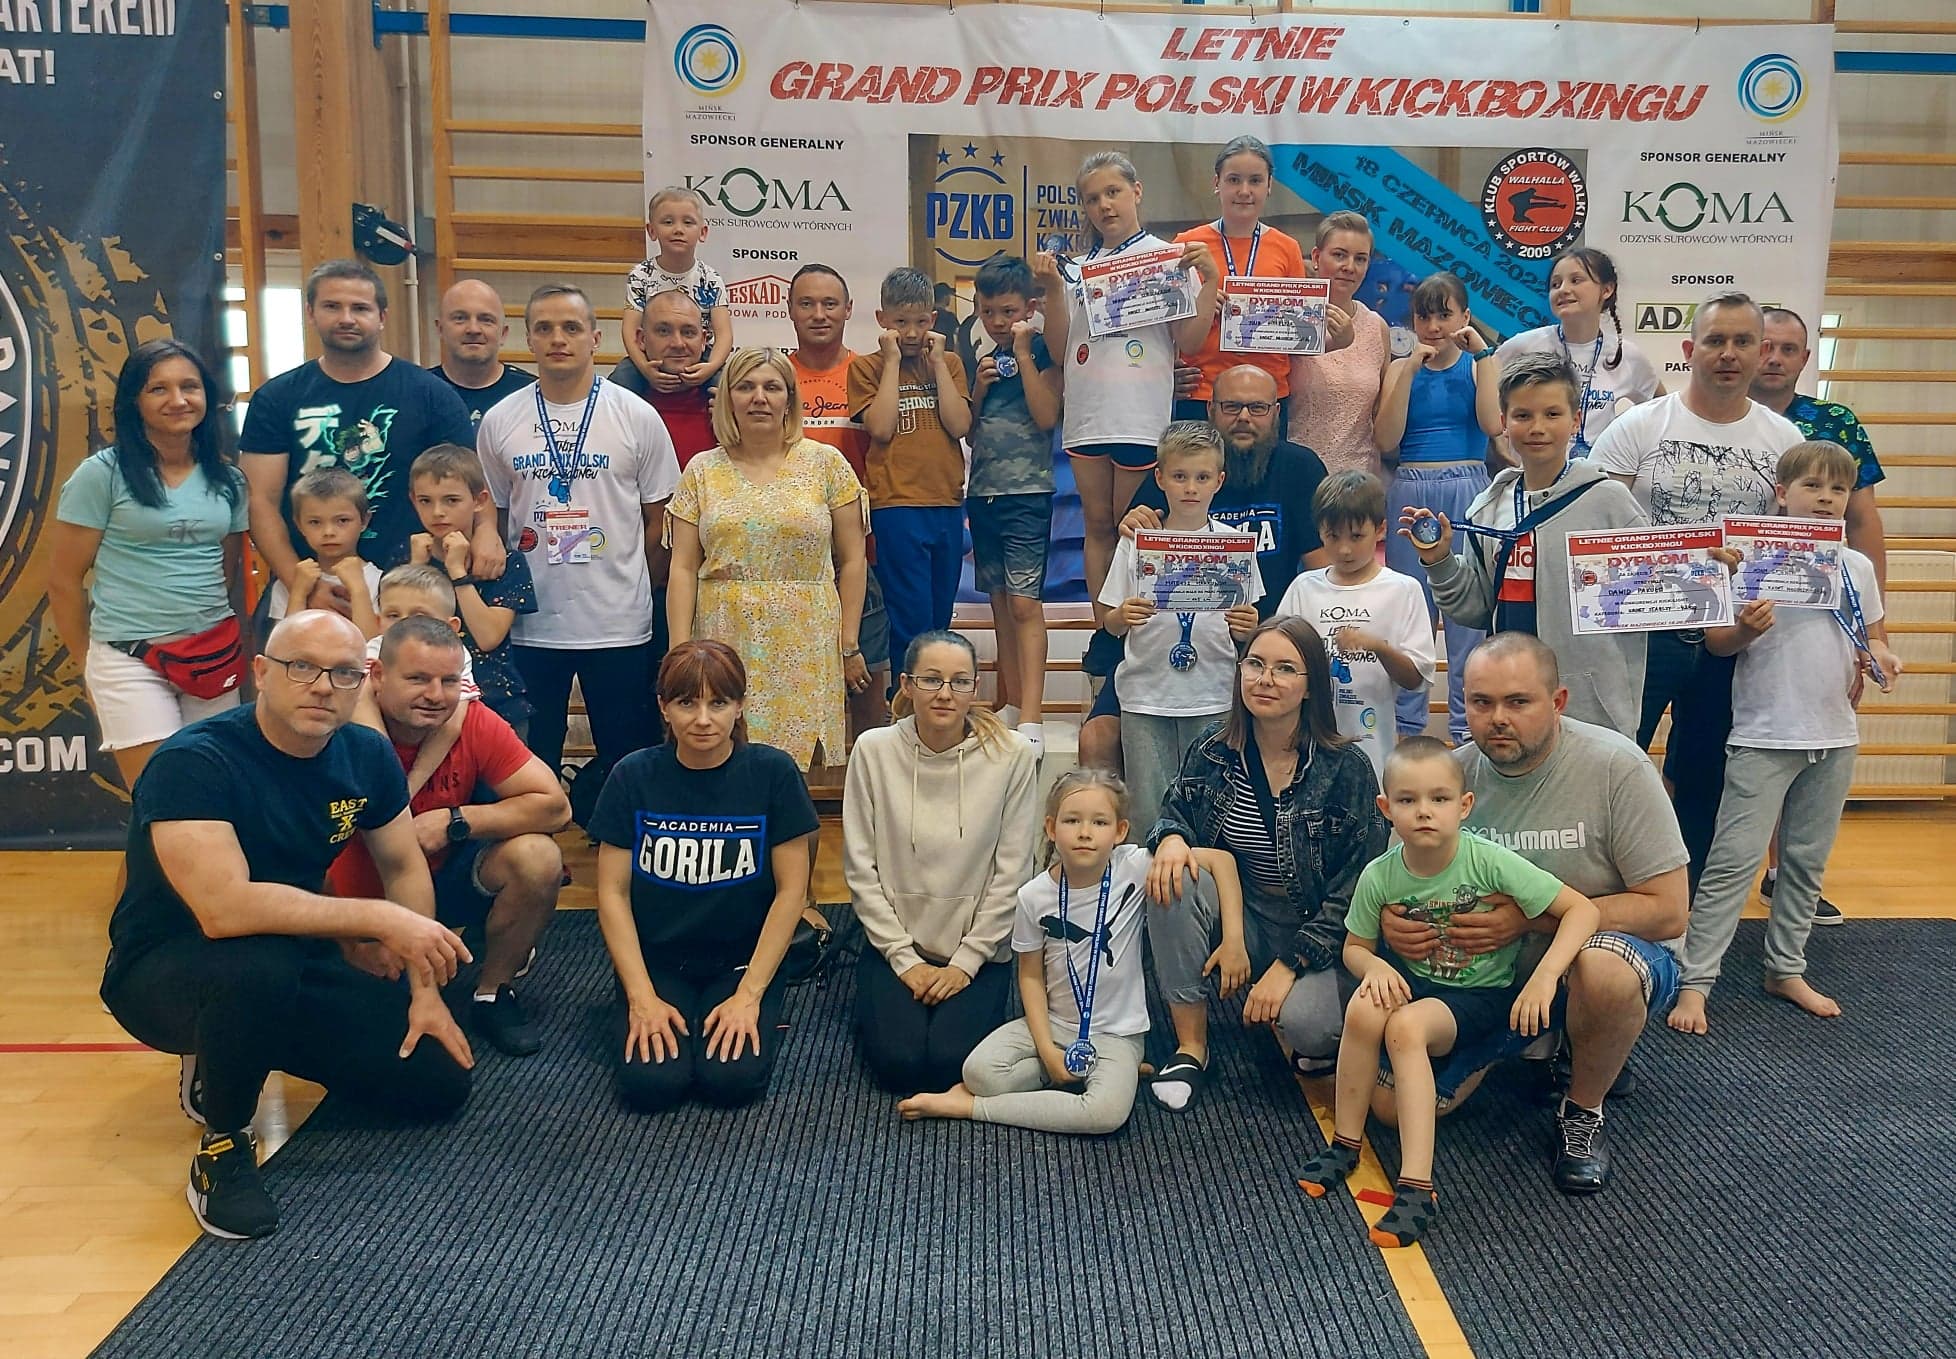 grupa rodziców ,trenerów i dzieci zawodników na wspólnym grupowym zdjęciu podczas letniego grand prix polski w kickboxingu